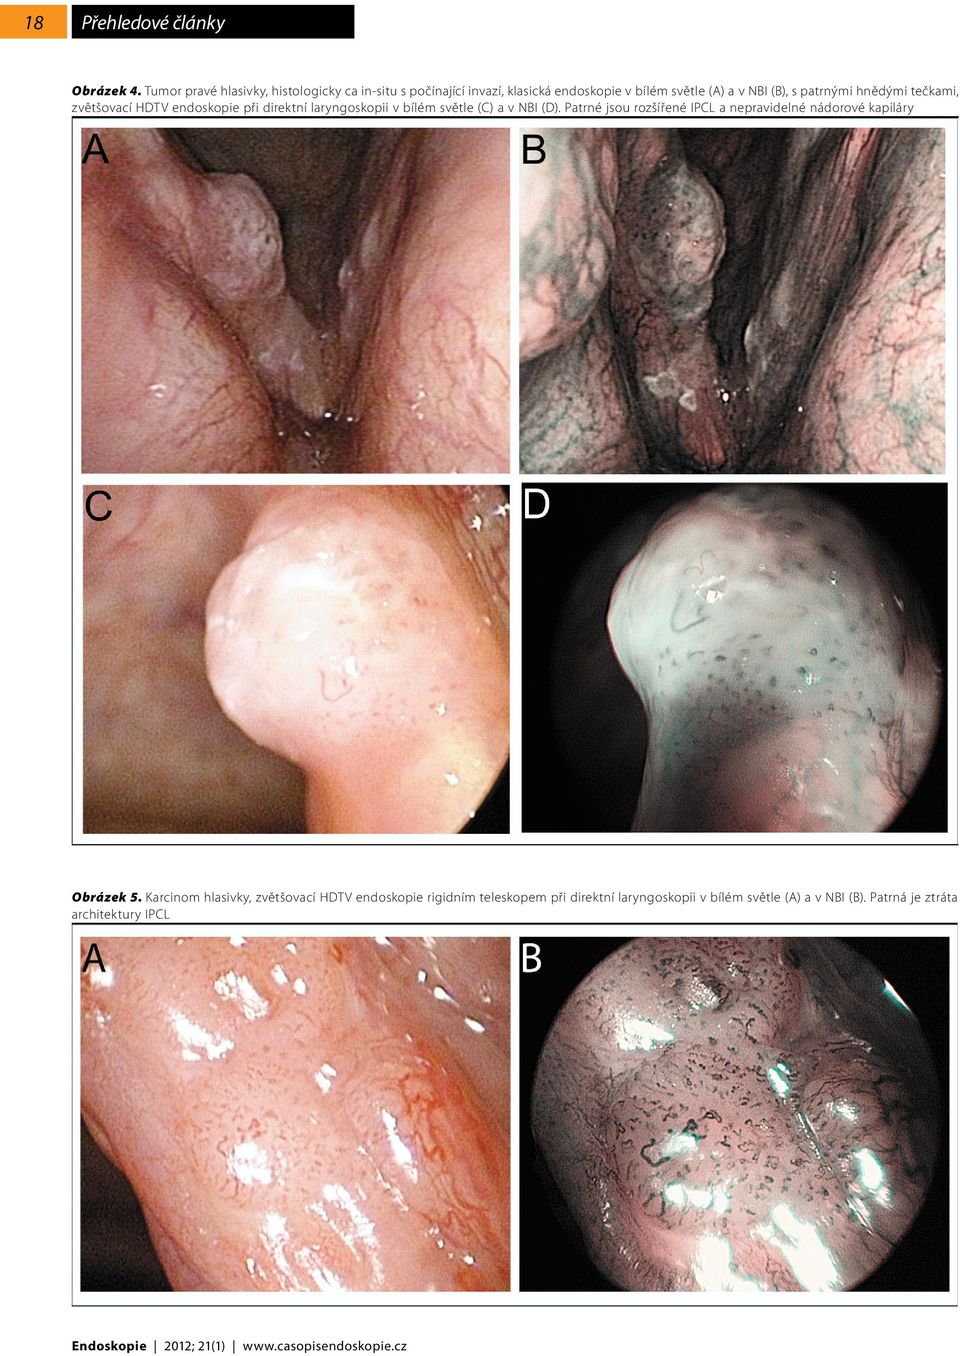 hnědými tečkami, zvětšovací HDTV endoskopie při direktní laryngoskopii v bílém světle (C) a v NBI (D).